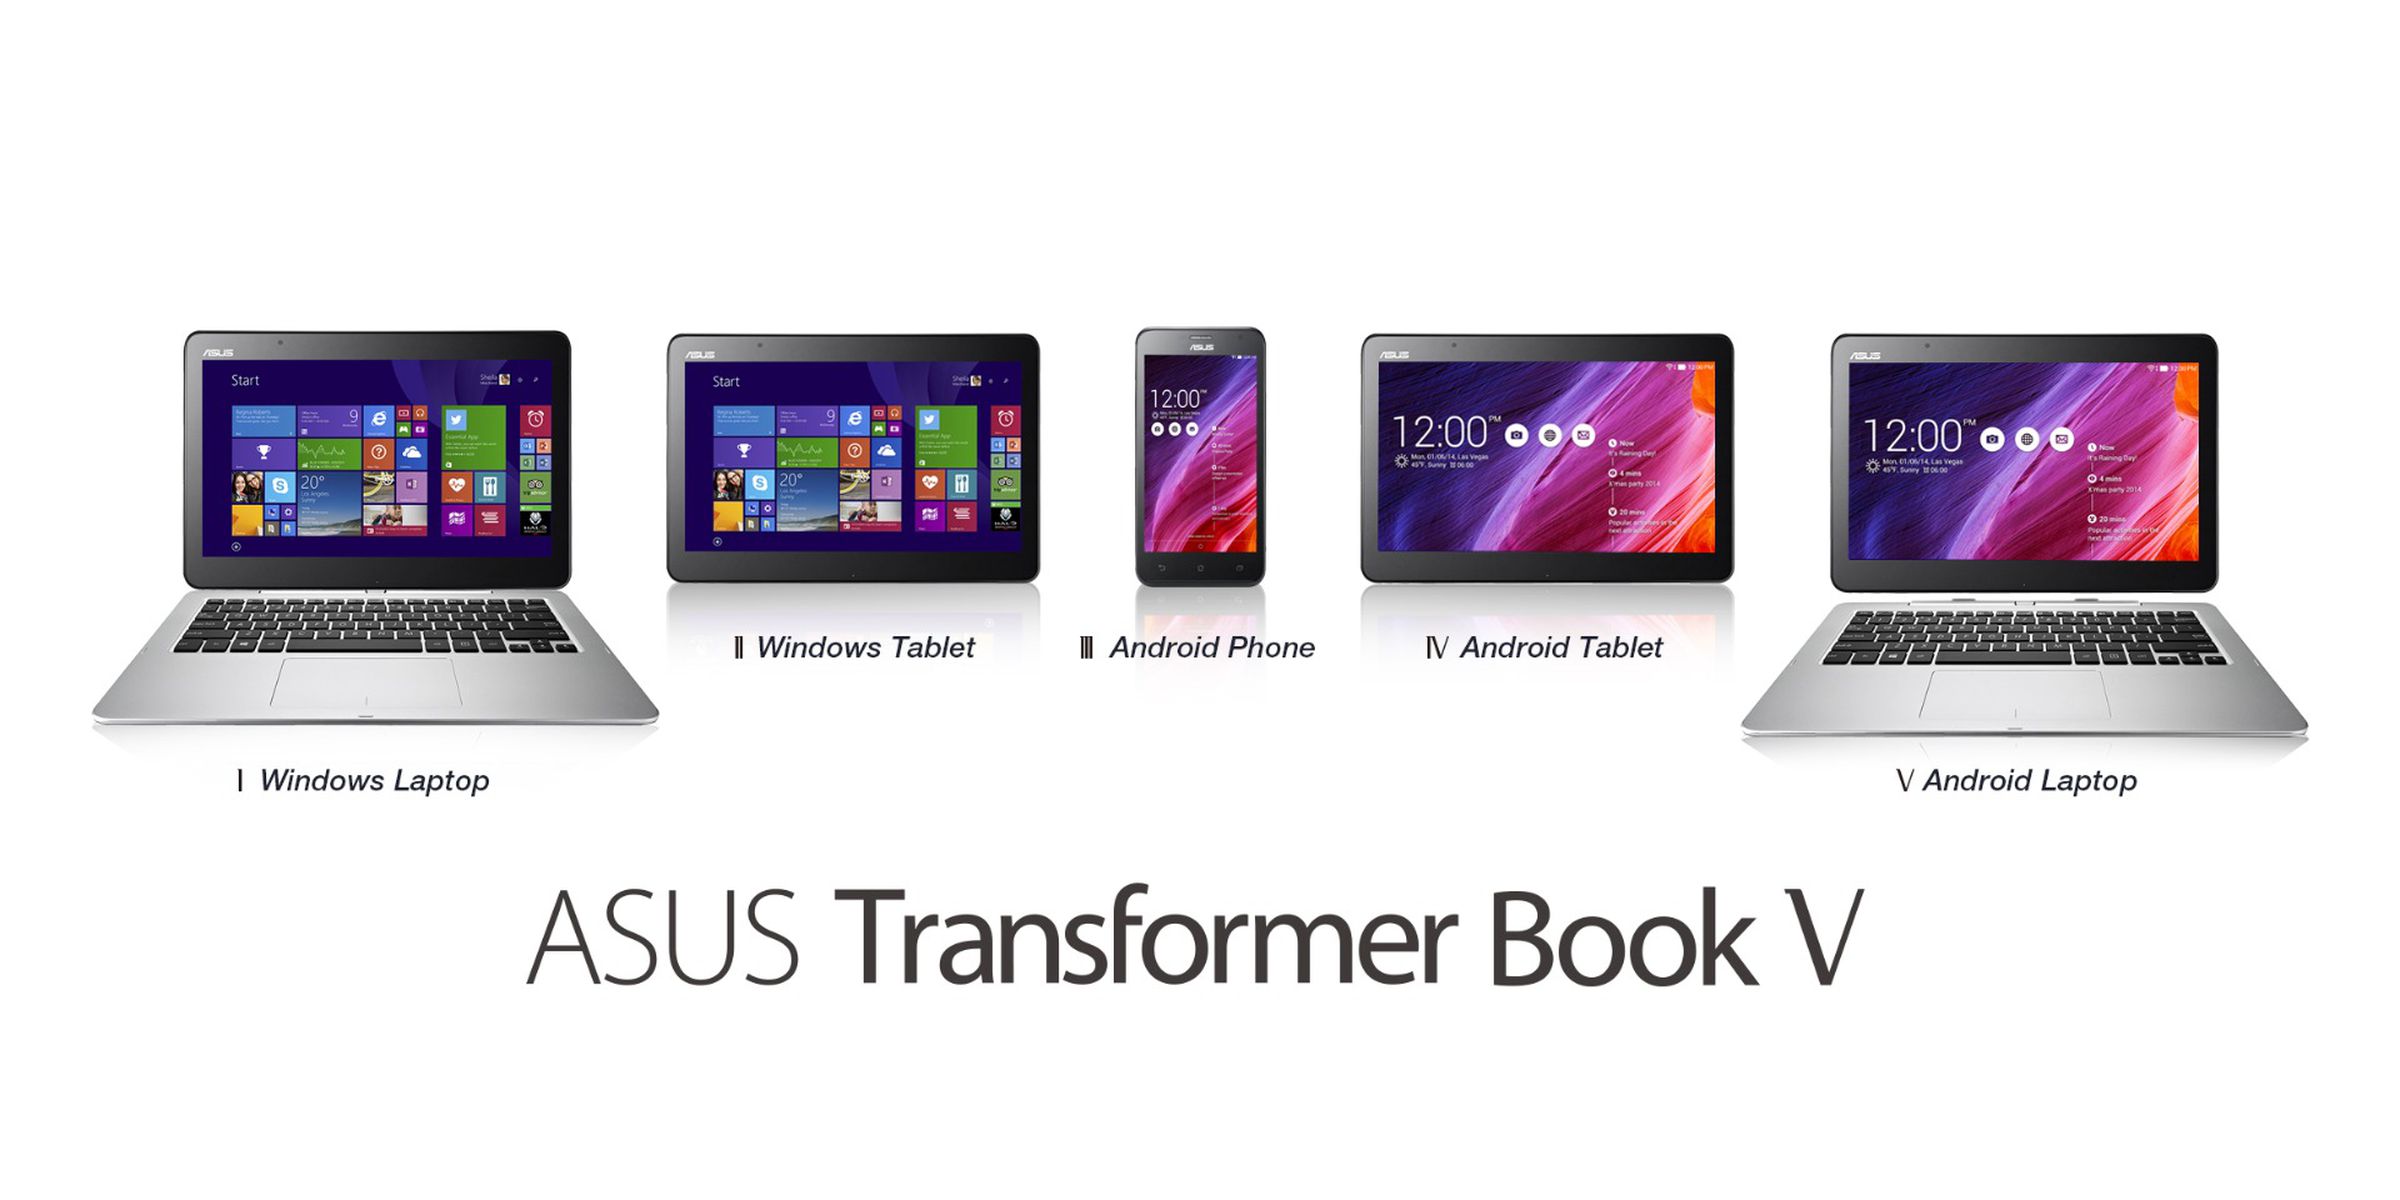 New Asus products at Computex 2014